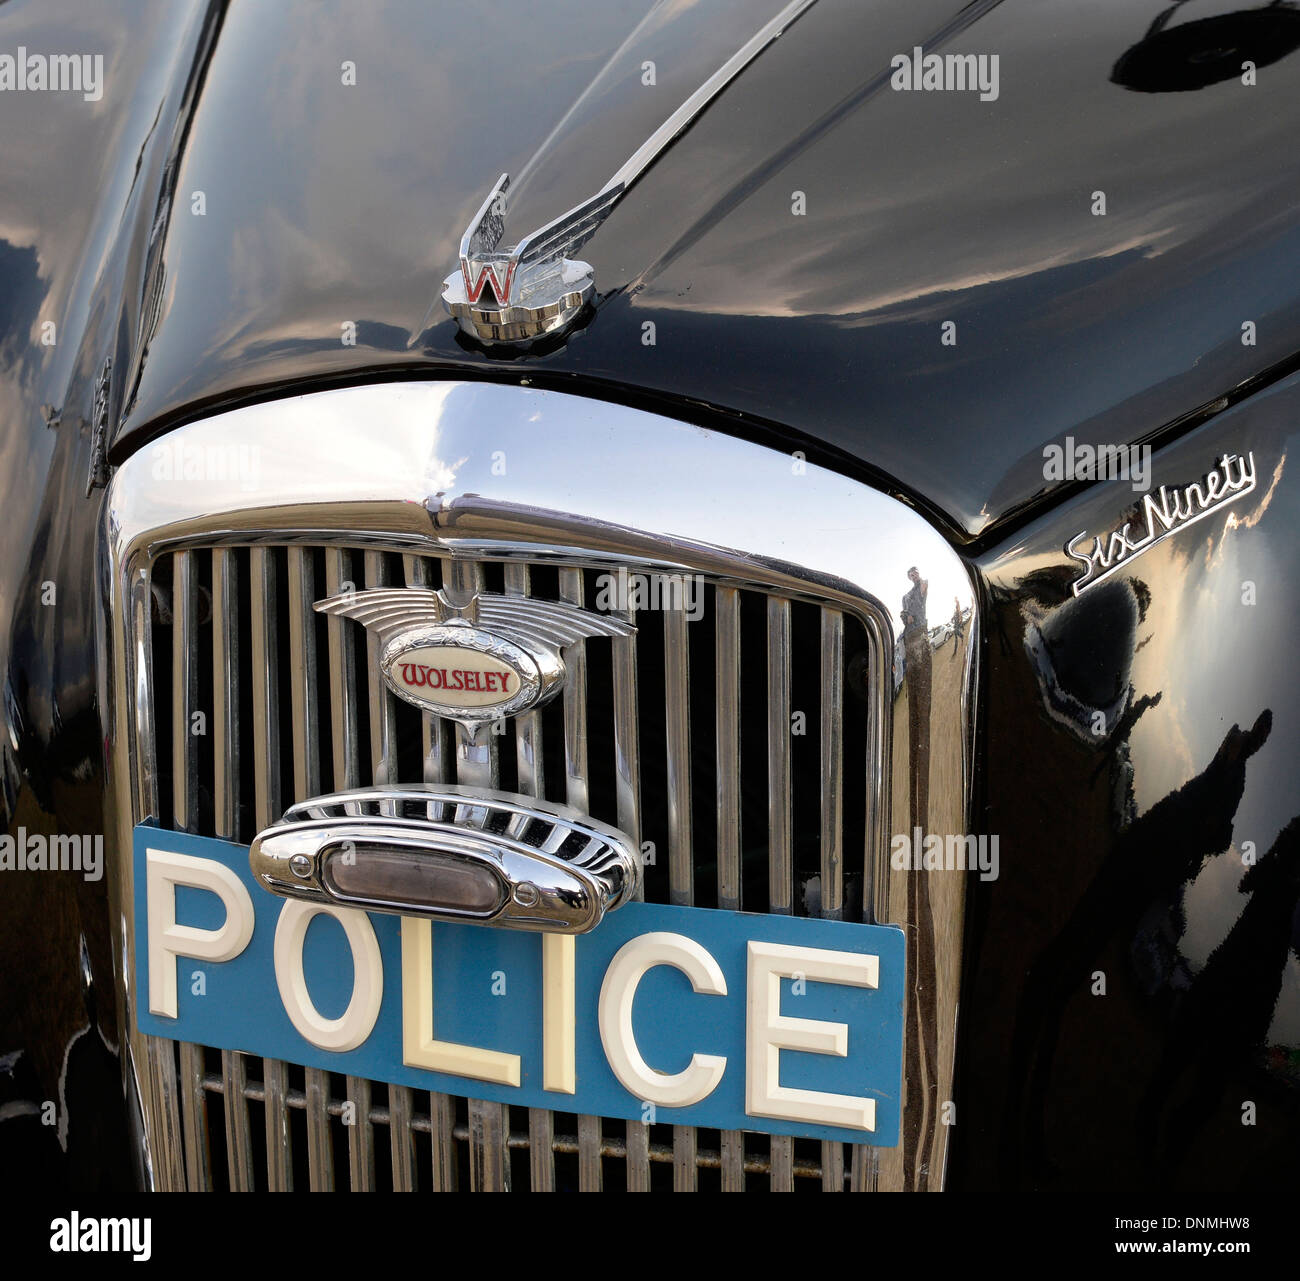 Le grill d'un Wolseley 6/90 voiture de police classique, England, UK. Banque D'Images